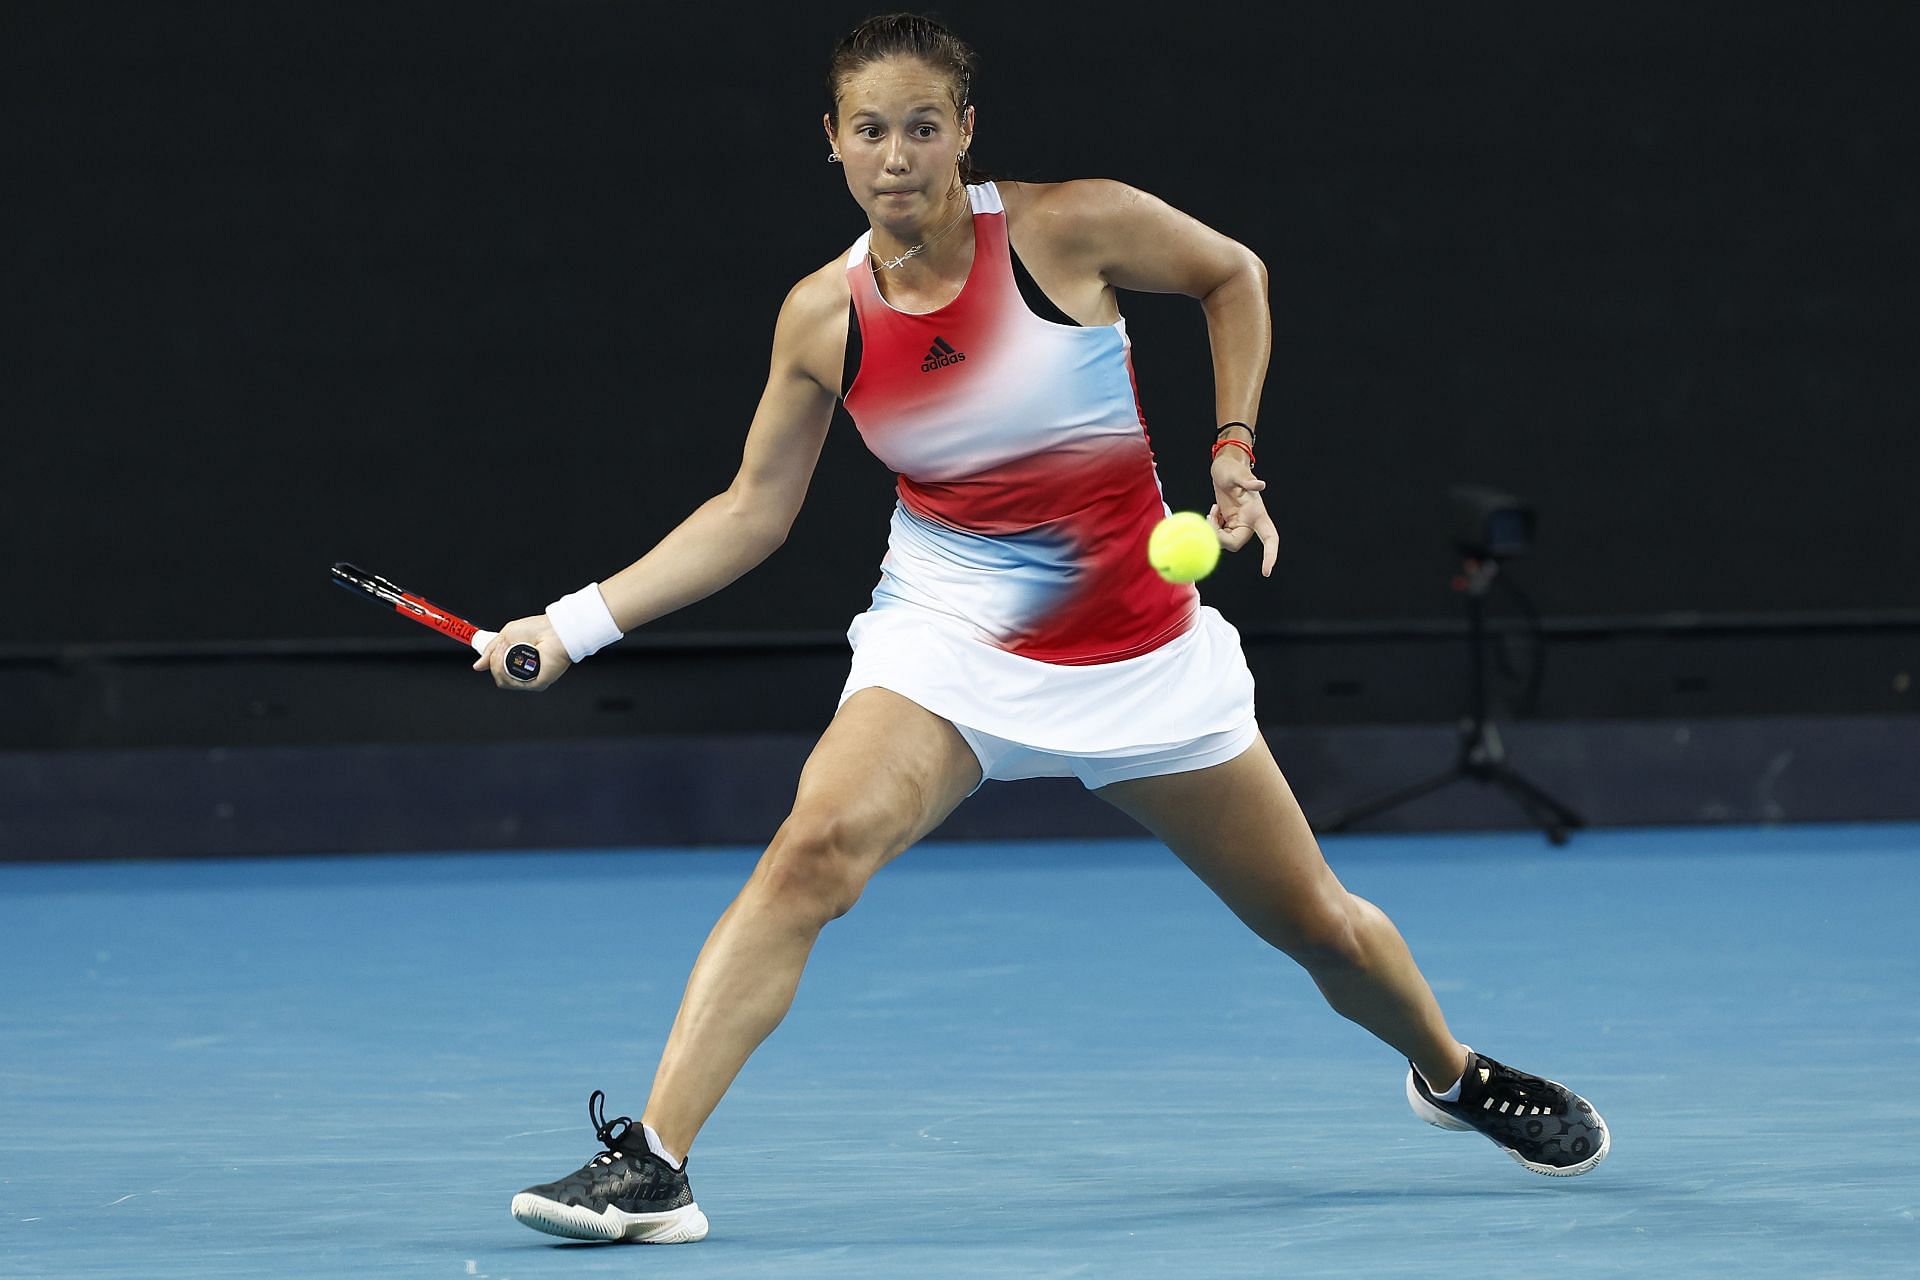 Daria Kasatkina at the 2022 Australian Open